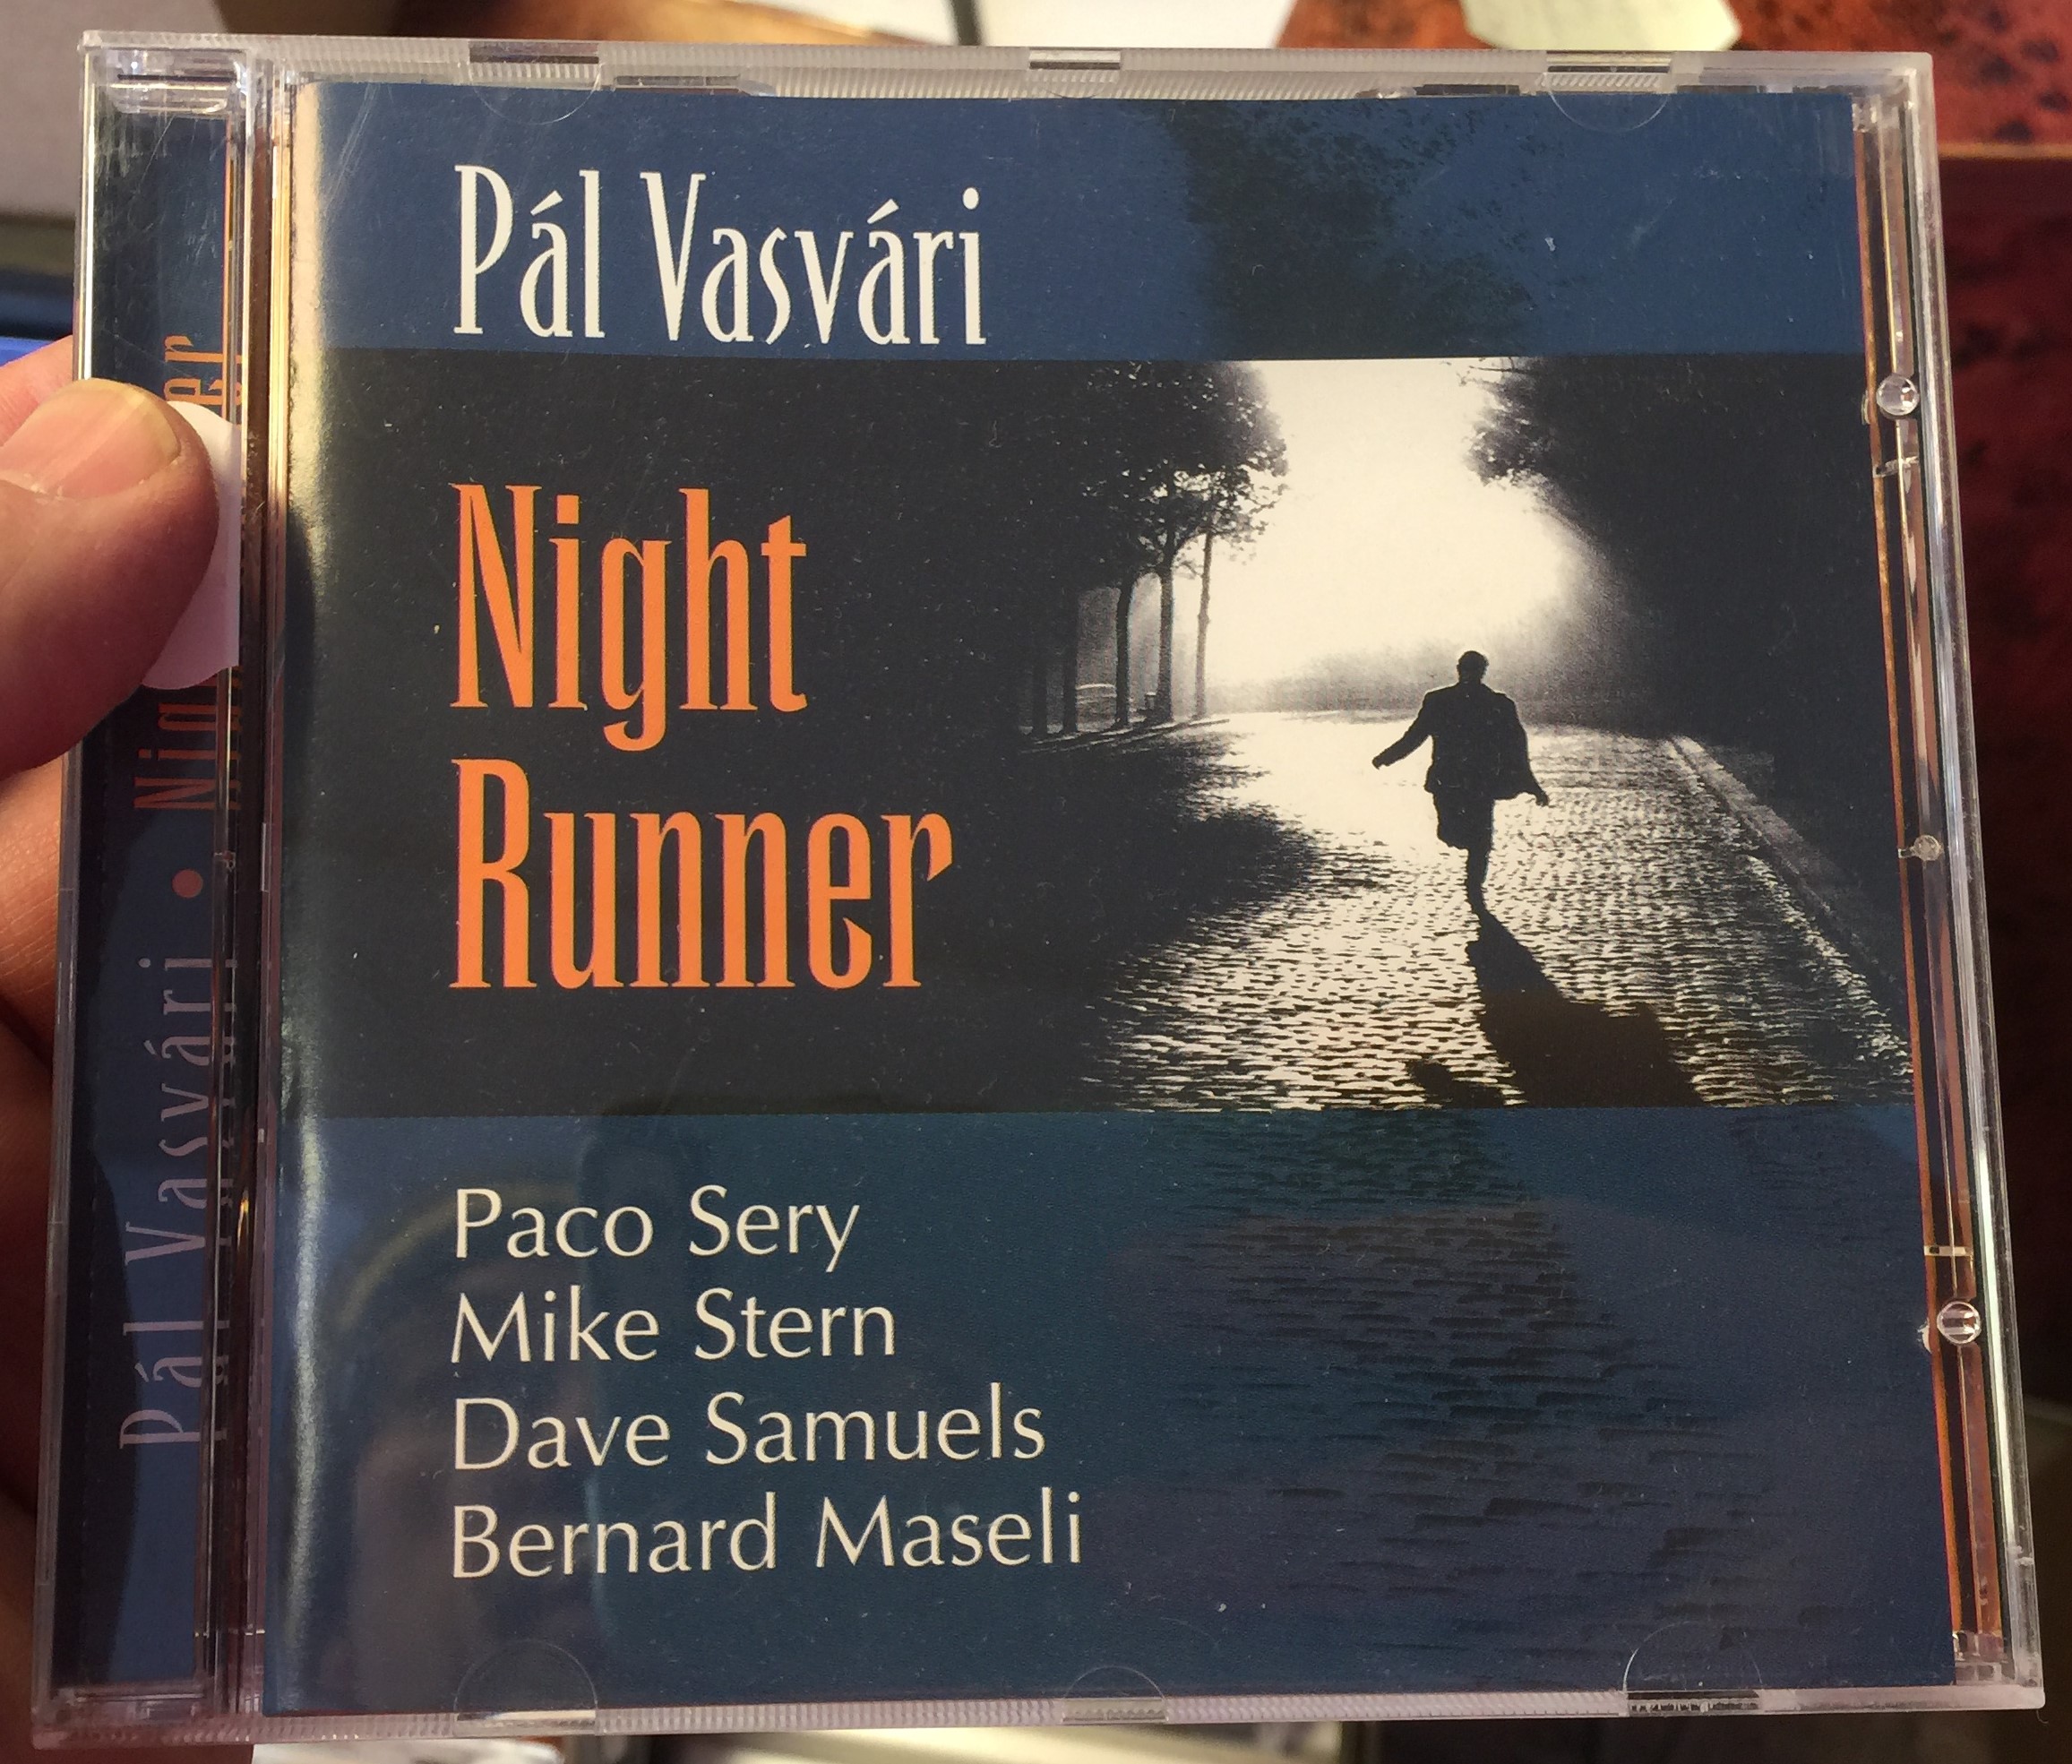 p-l-vasv-ri-night-runner-br-ll-note-records-audio-cd-2004-bn-0401-1-.jpg